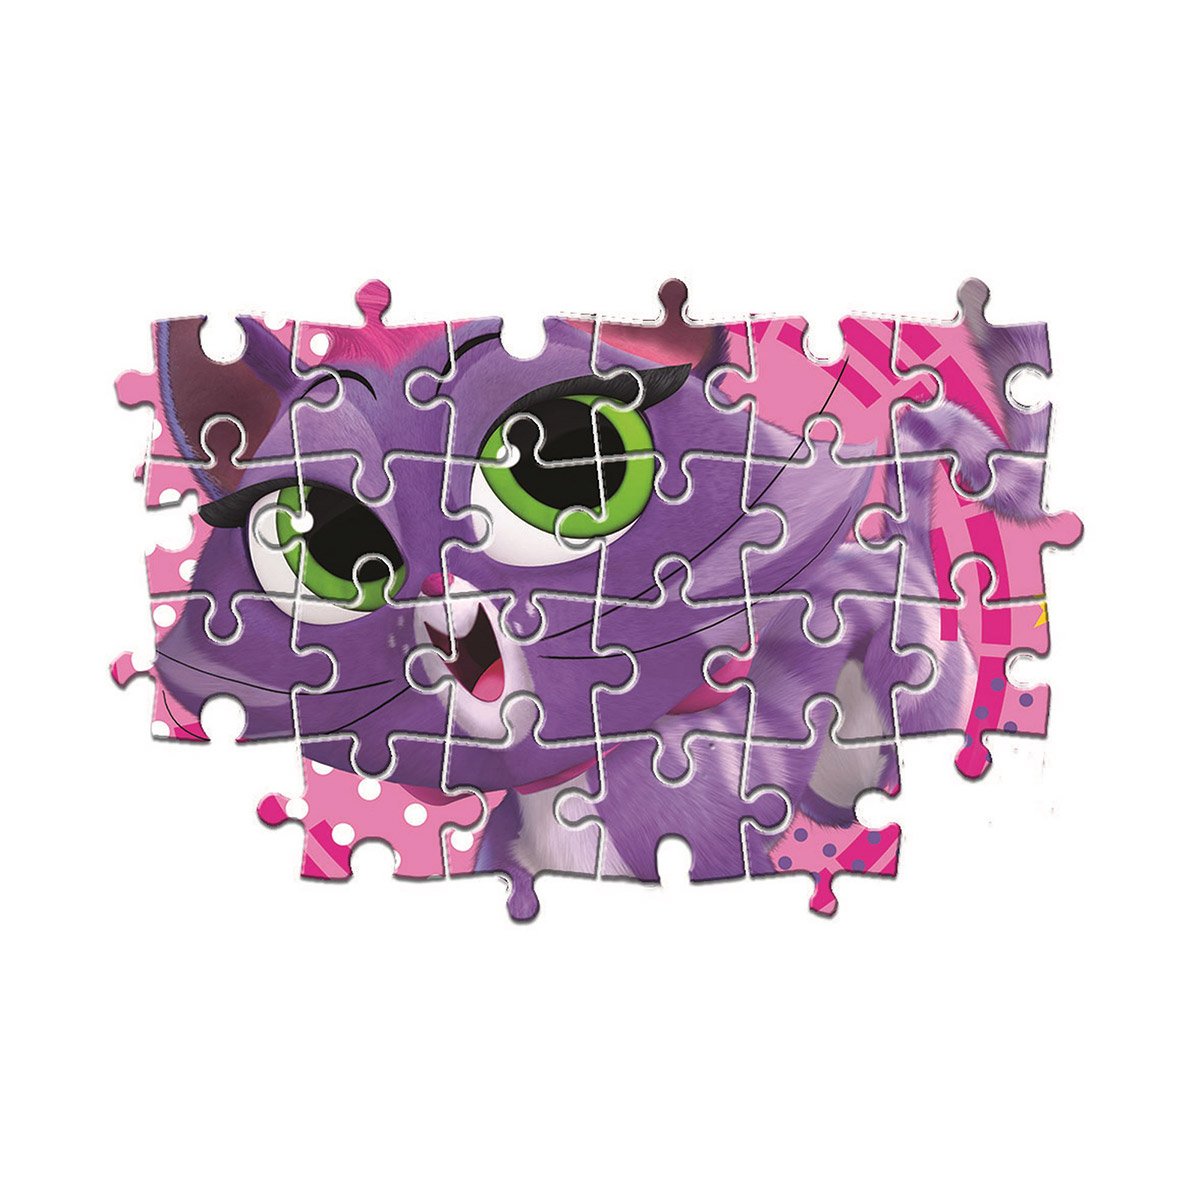 Puzzle 3x48 pièces Disney Animaux - La Grande Récré